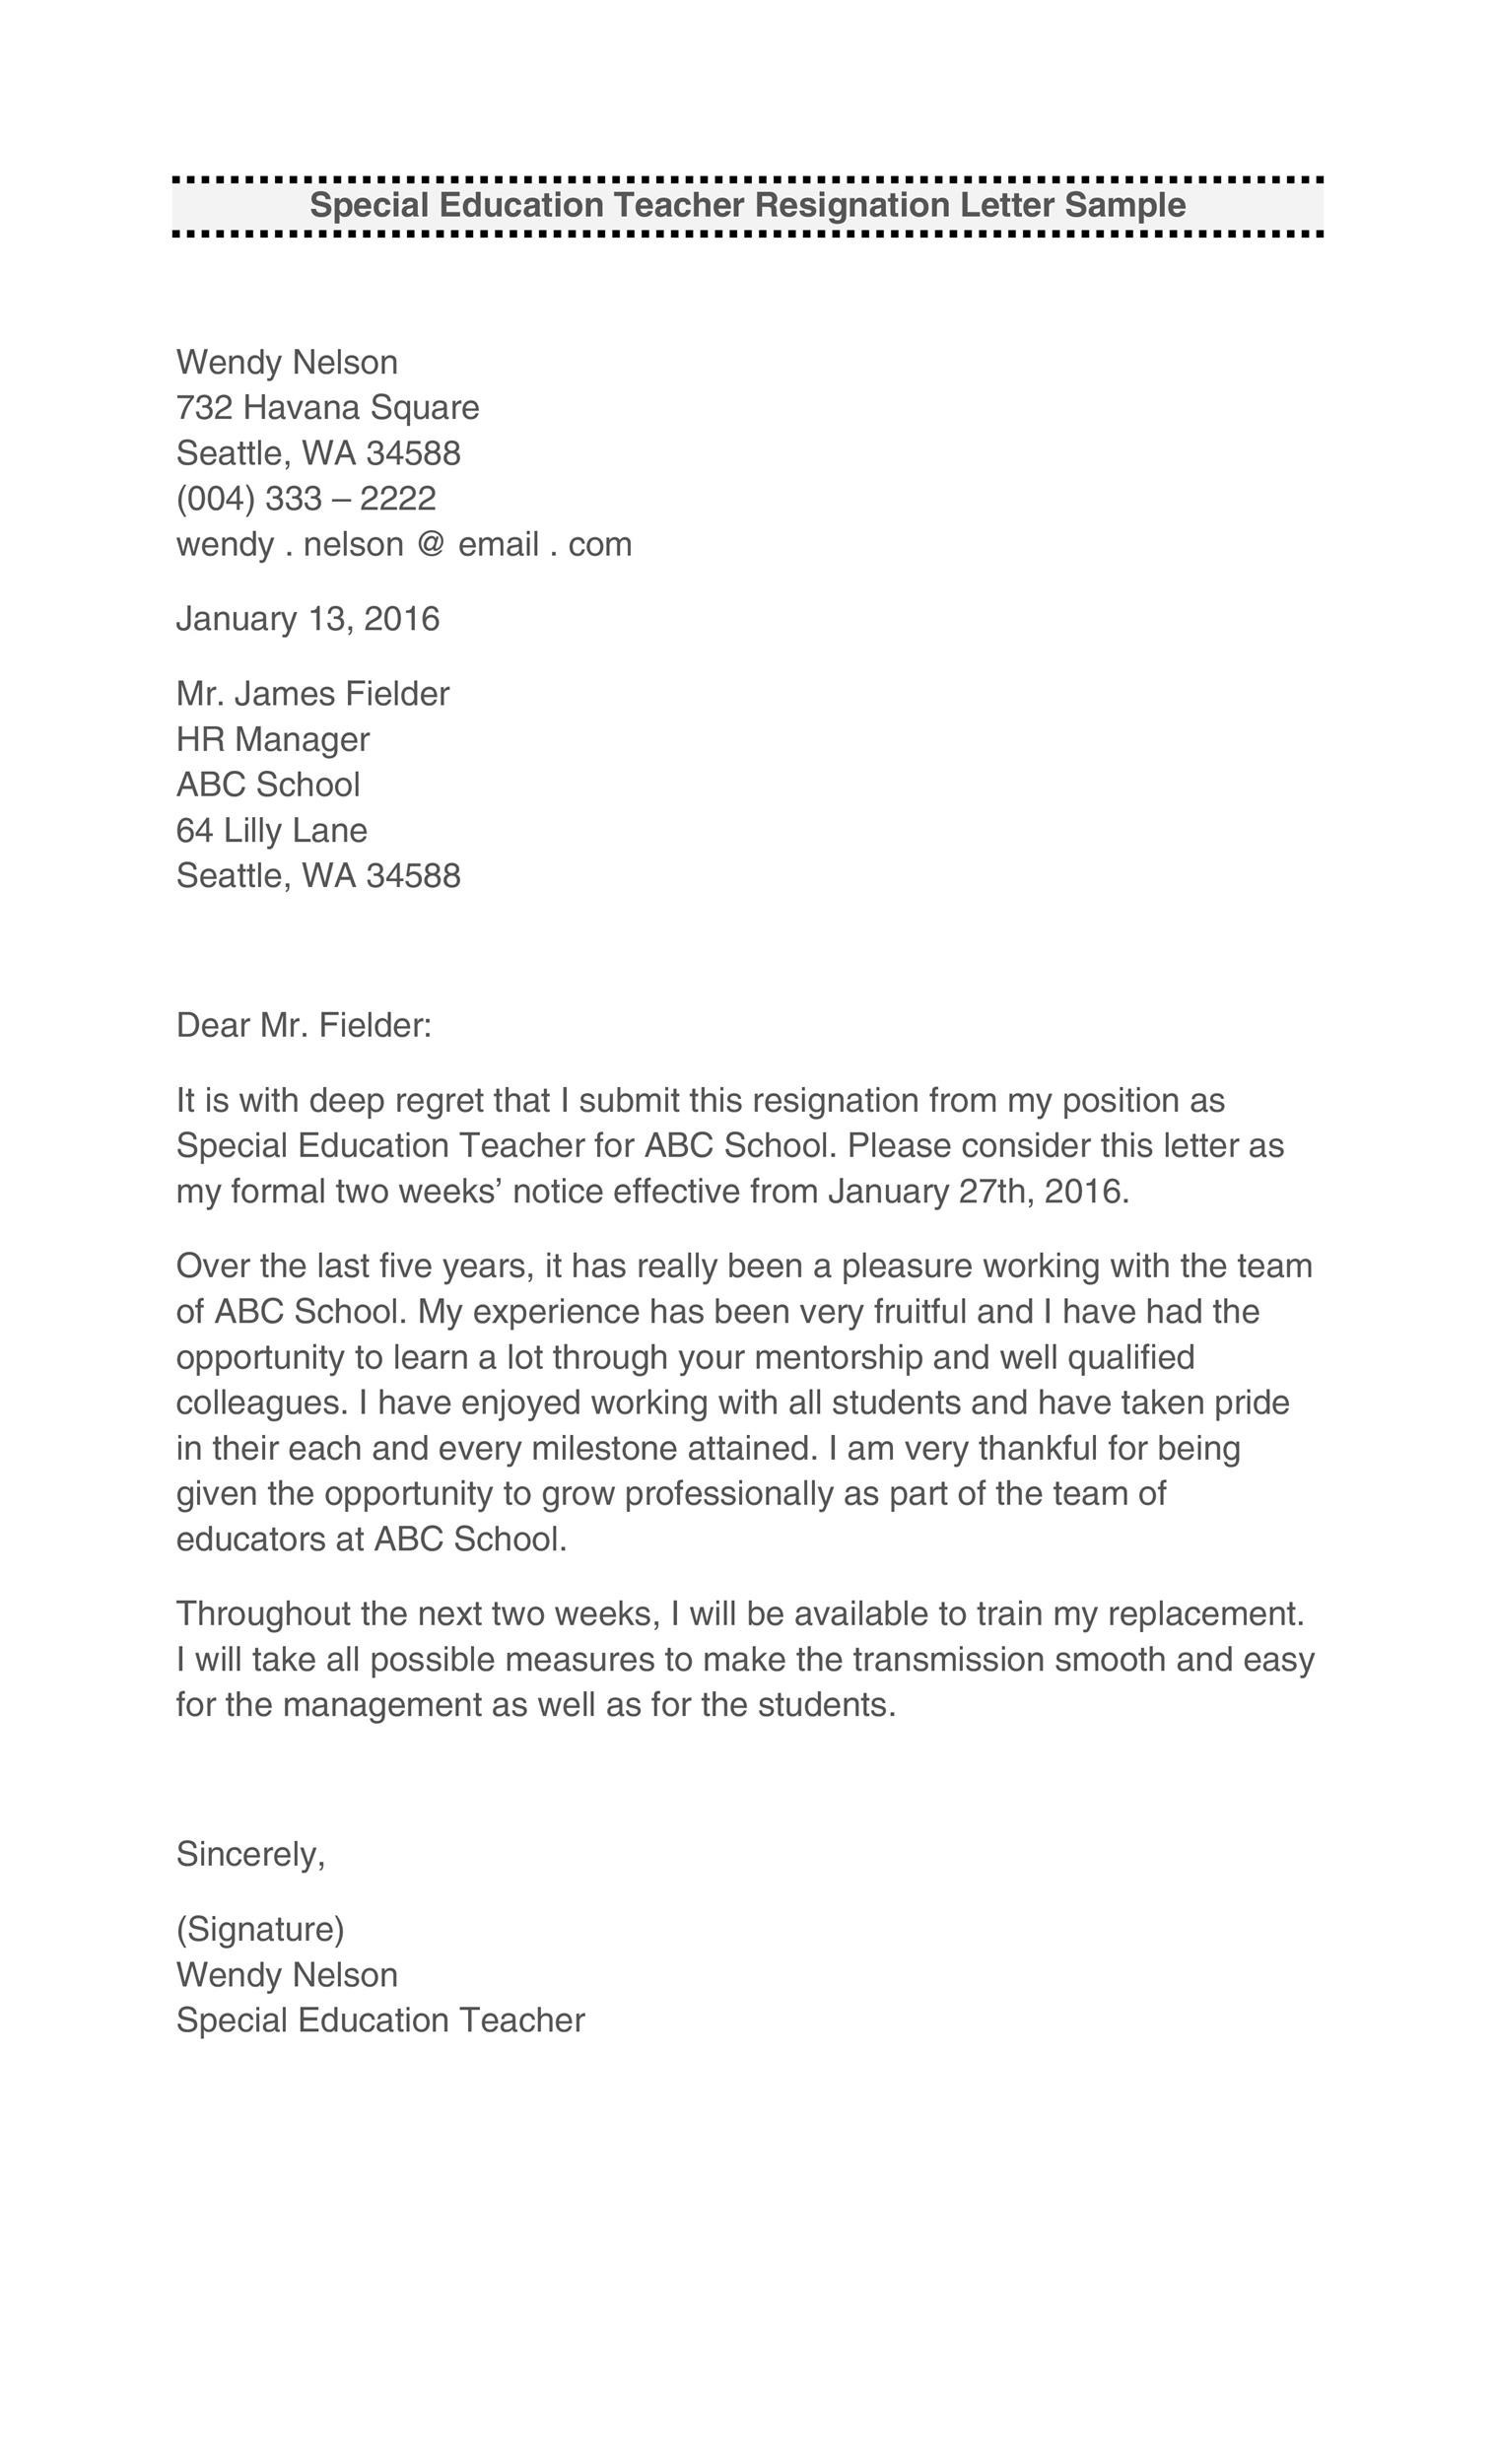 Sample Teacher Resignation Letter from templatelab.com